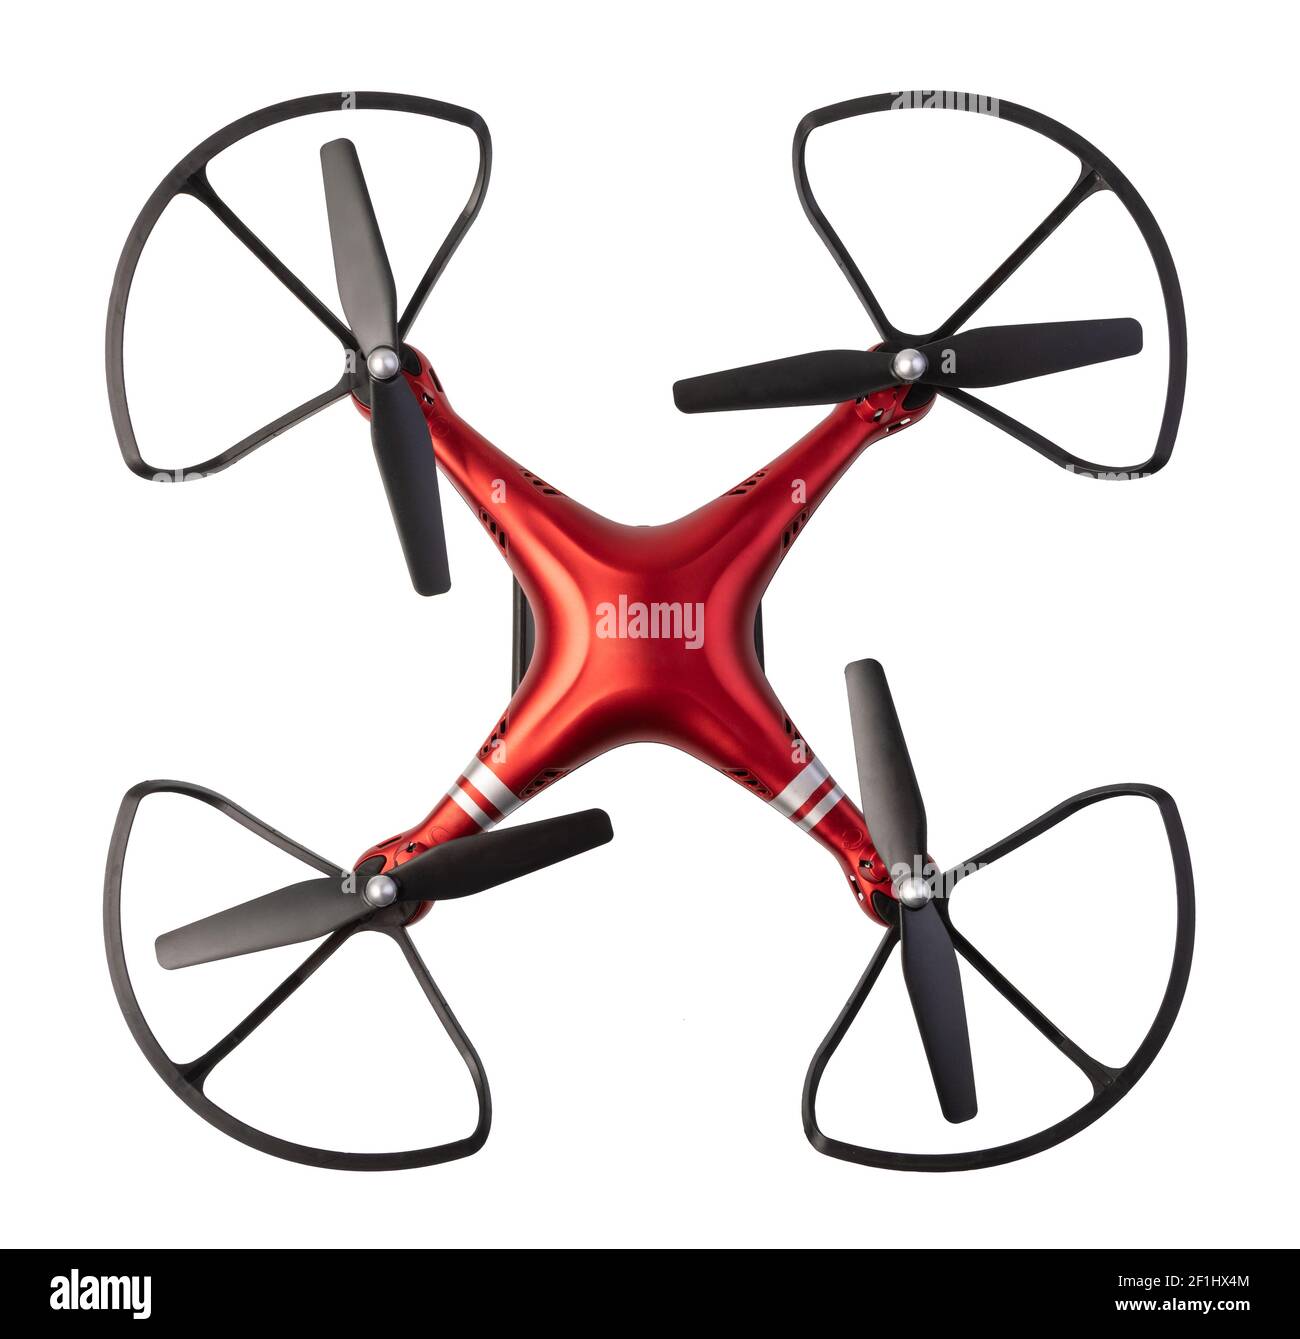 Air drones Banque d'images détourées - Alamy